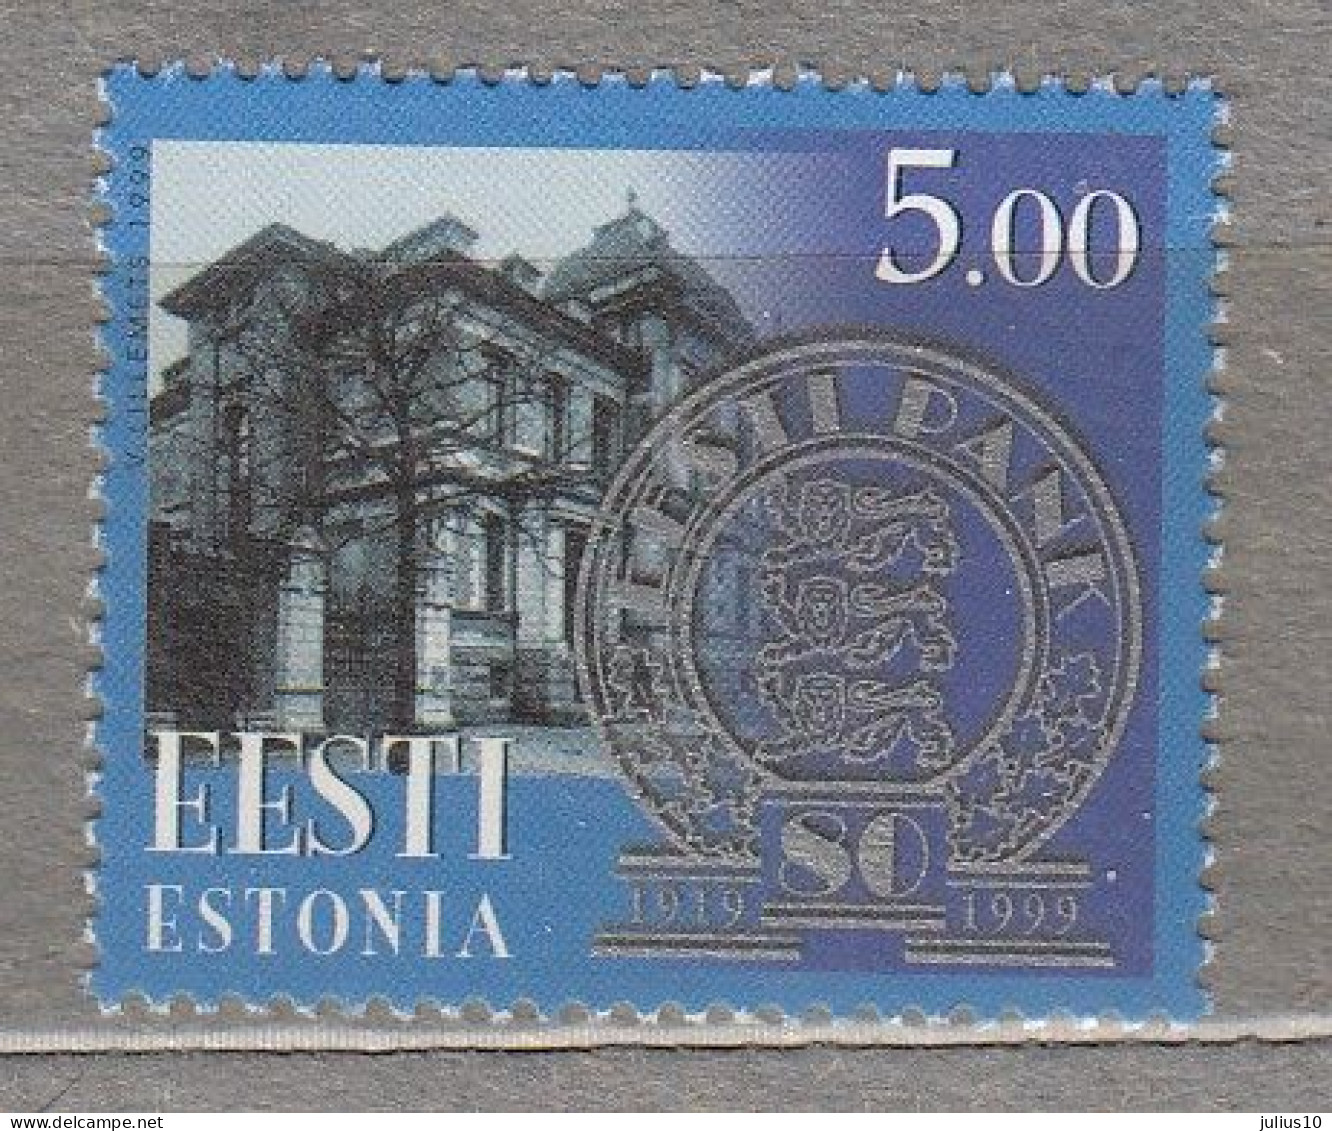 ESTONIA 1999 National Bank MNH(**) Mi 344 # Est330 - Estonie